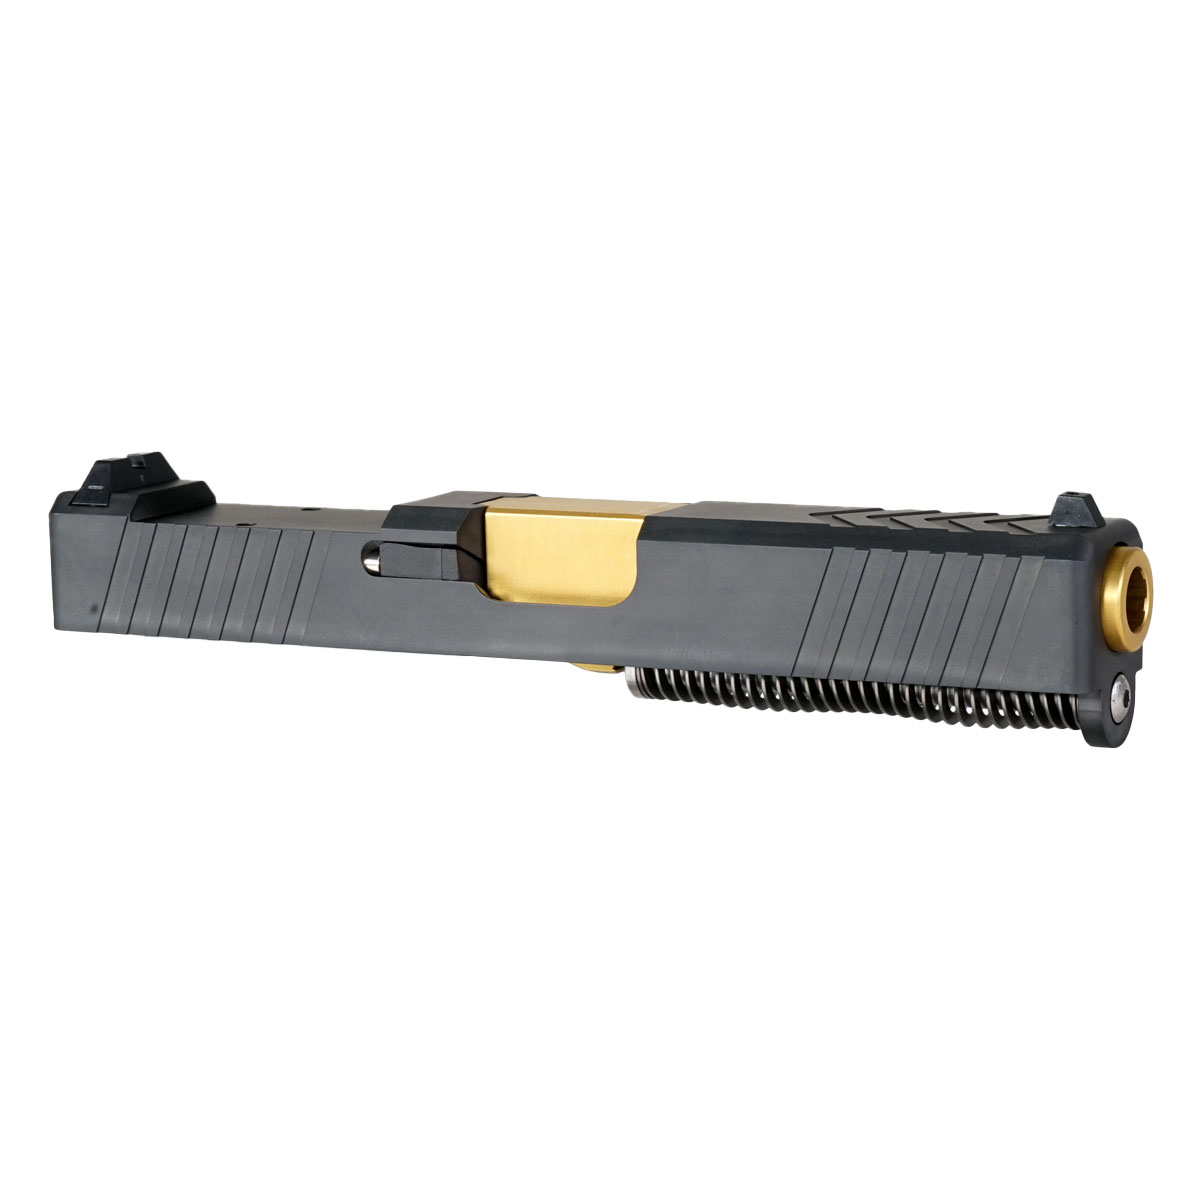 DDS 'Swindler's Chest' 9mm Complete Slide Kit - Glock 19 Gen 1-3 Compatible